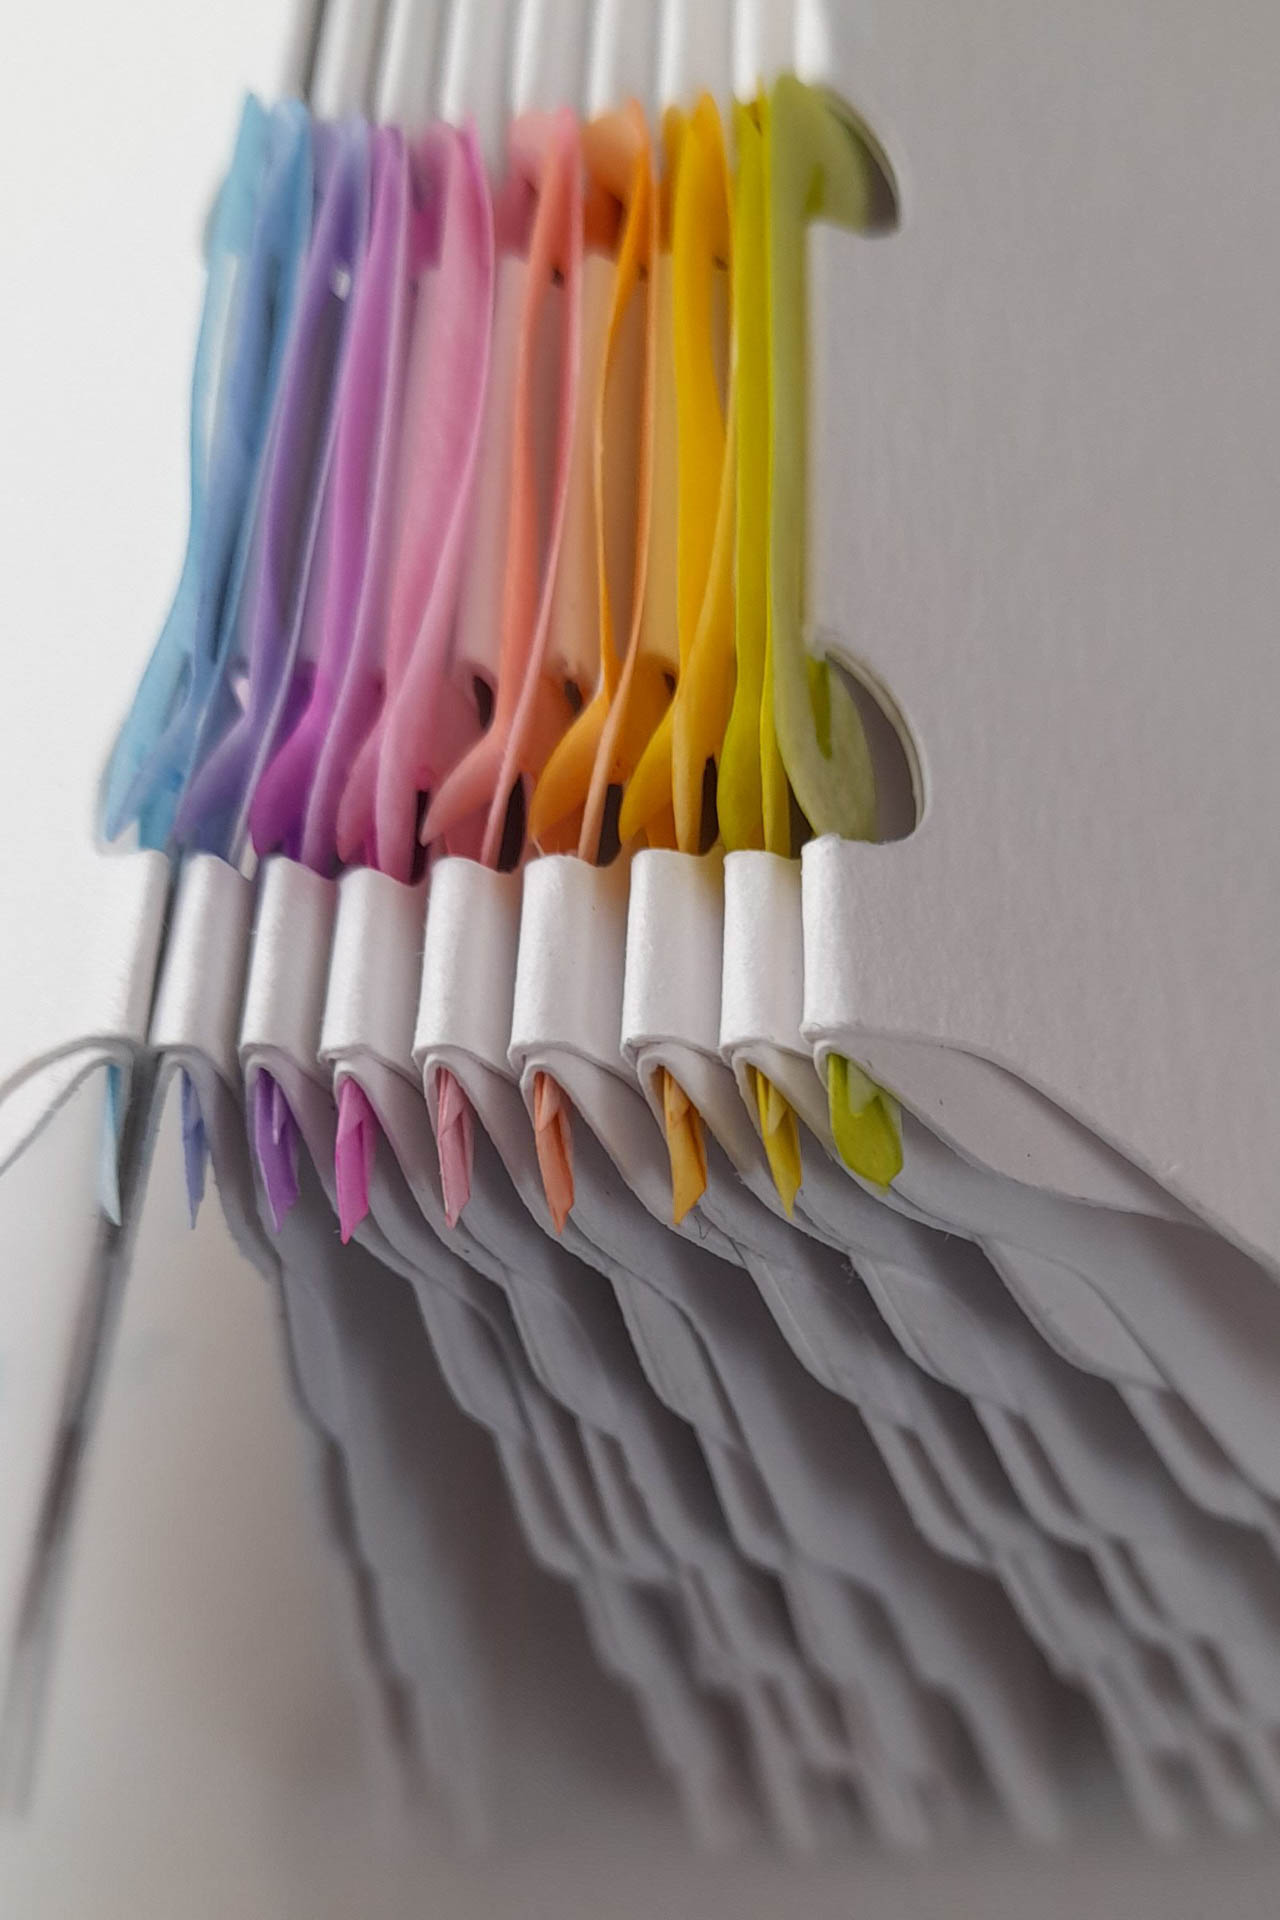 Printemps - Papier - Découpe au cutter numérique, assemblage par crochets et reliure "Paperoko" - Env. H.12,2 x L.9,3 x P.1,8 cm - 2023